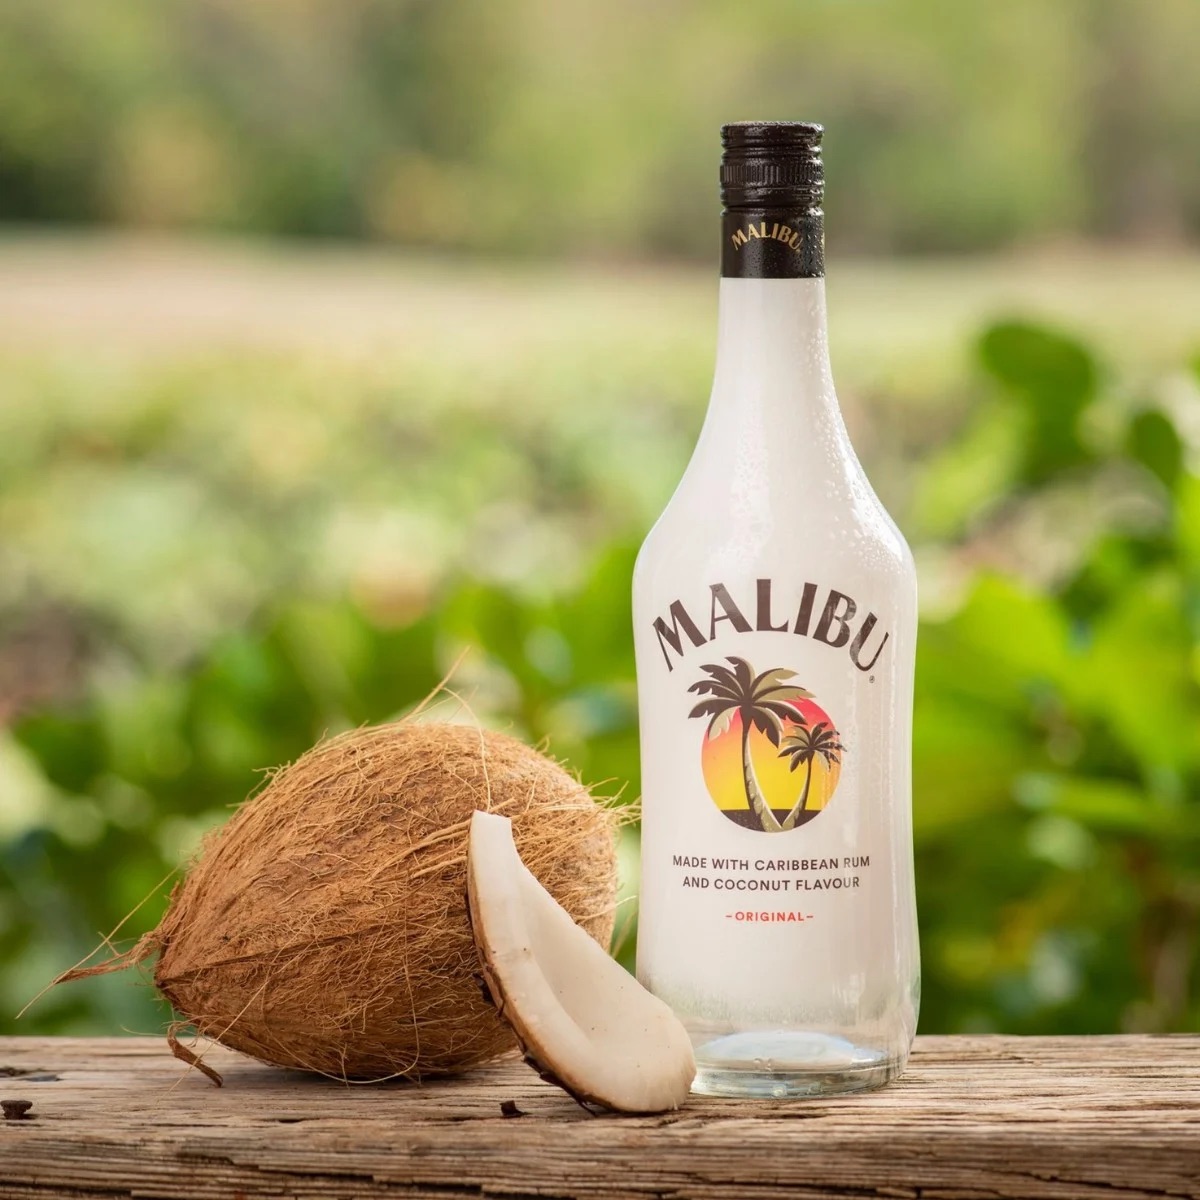 How To Store Malibu Rum